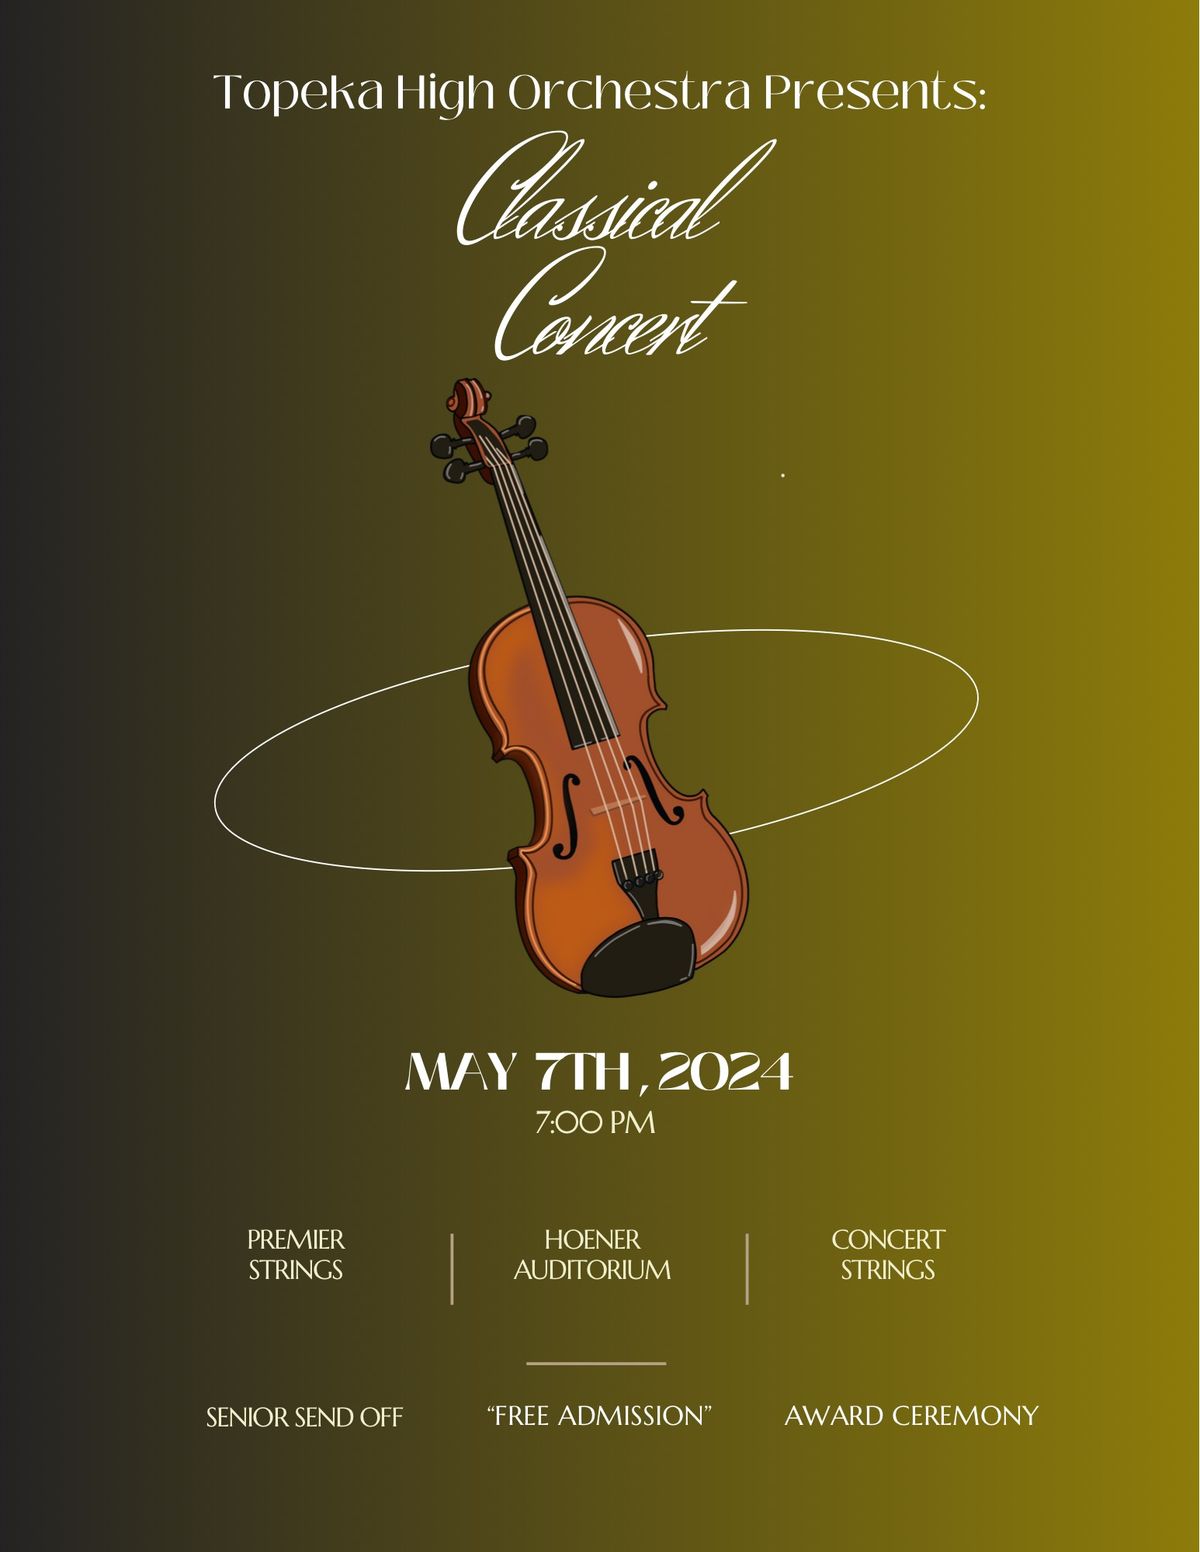 Classical Concert, Awards, and Senior Sendoff